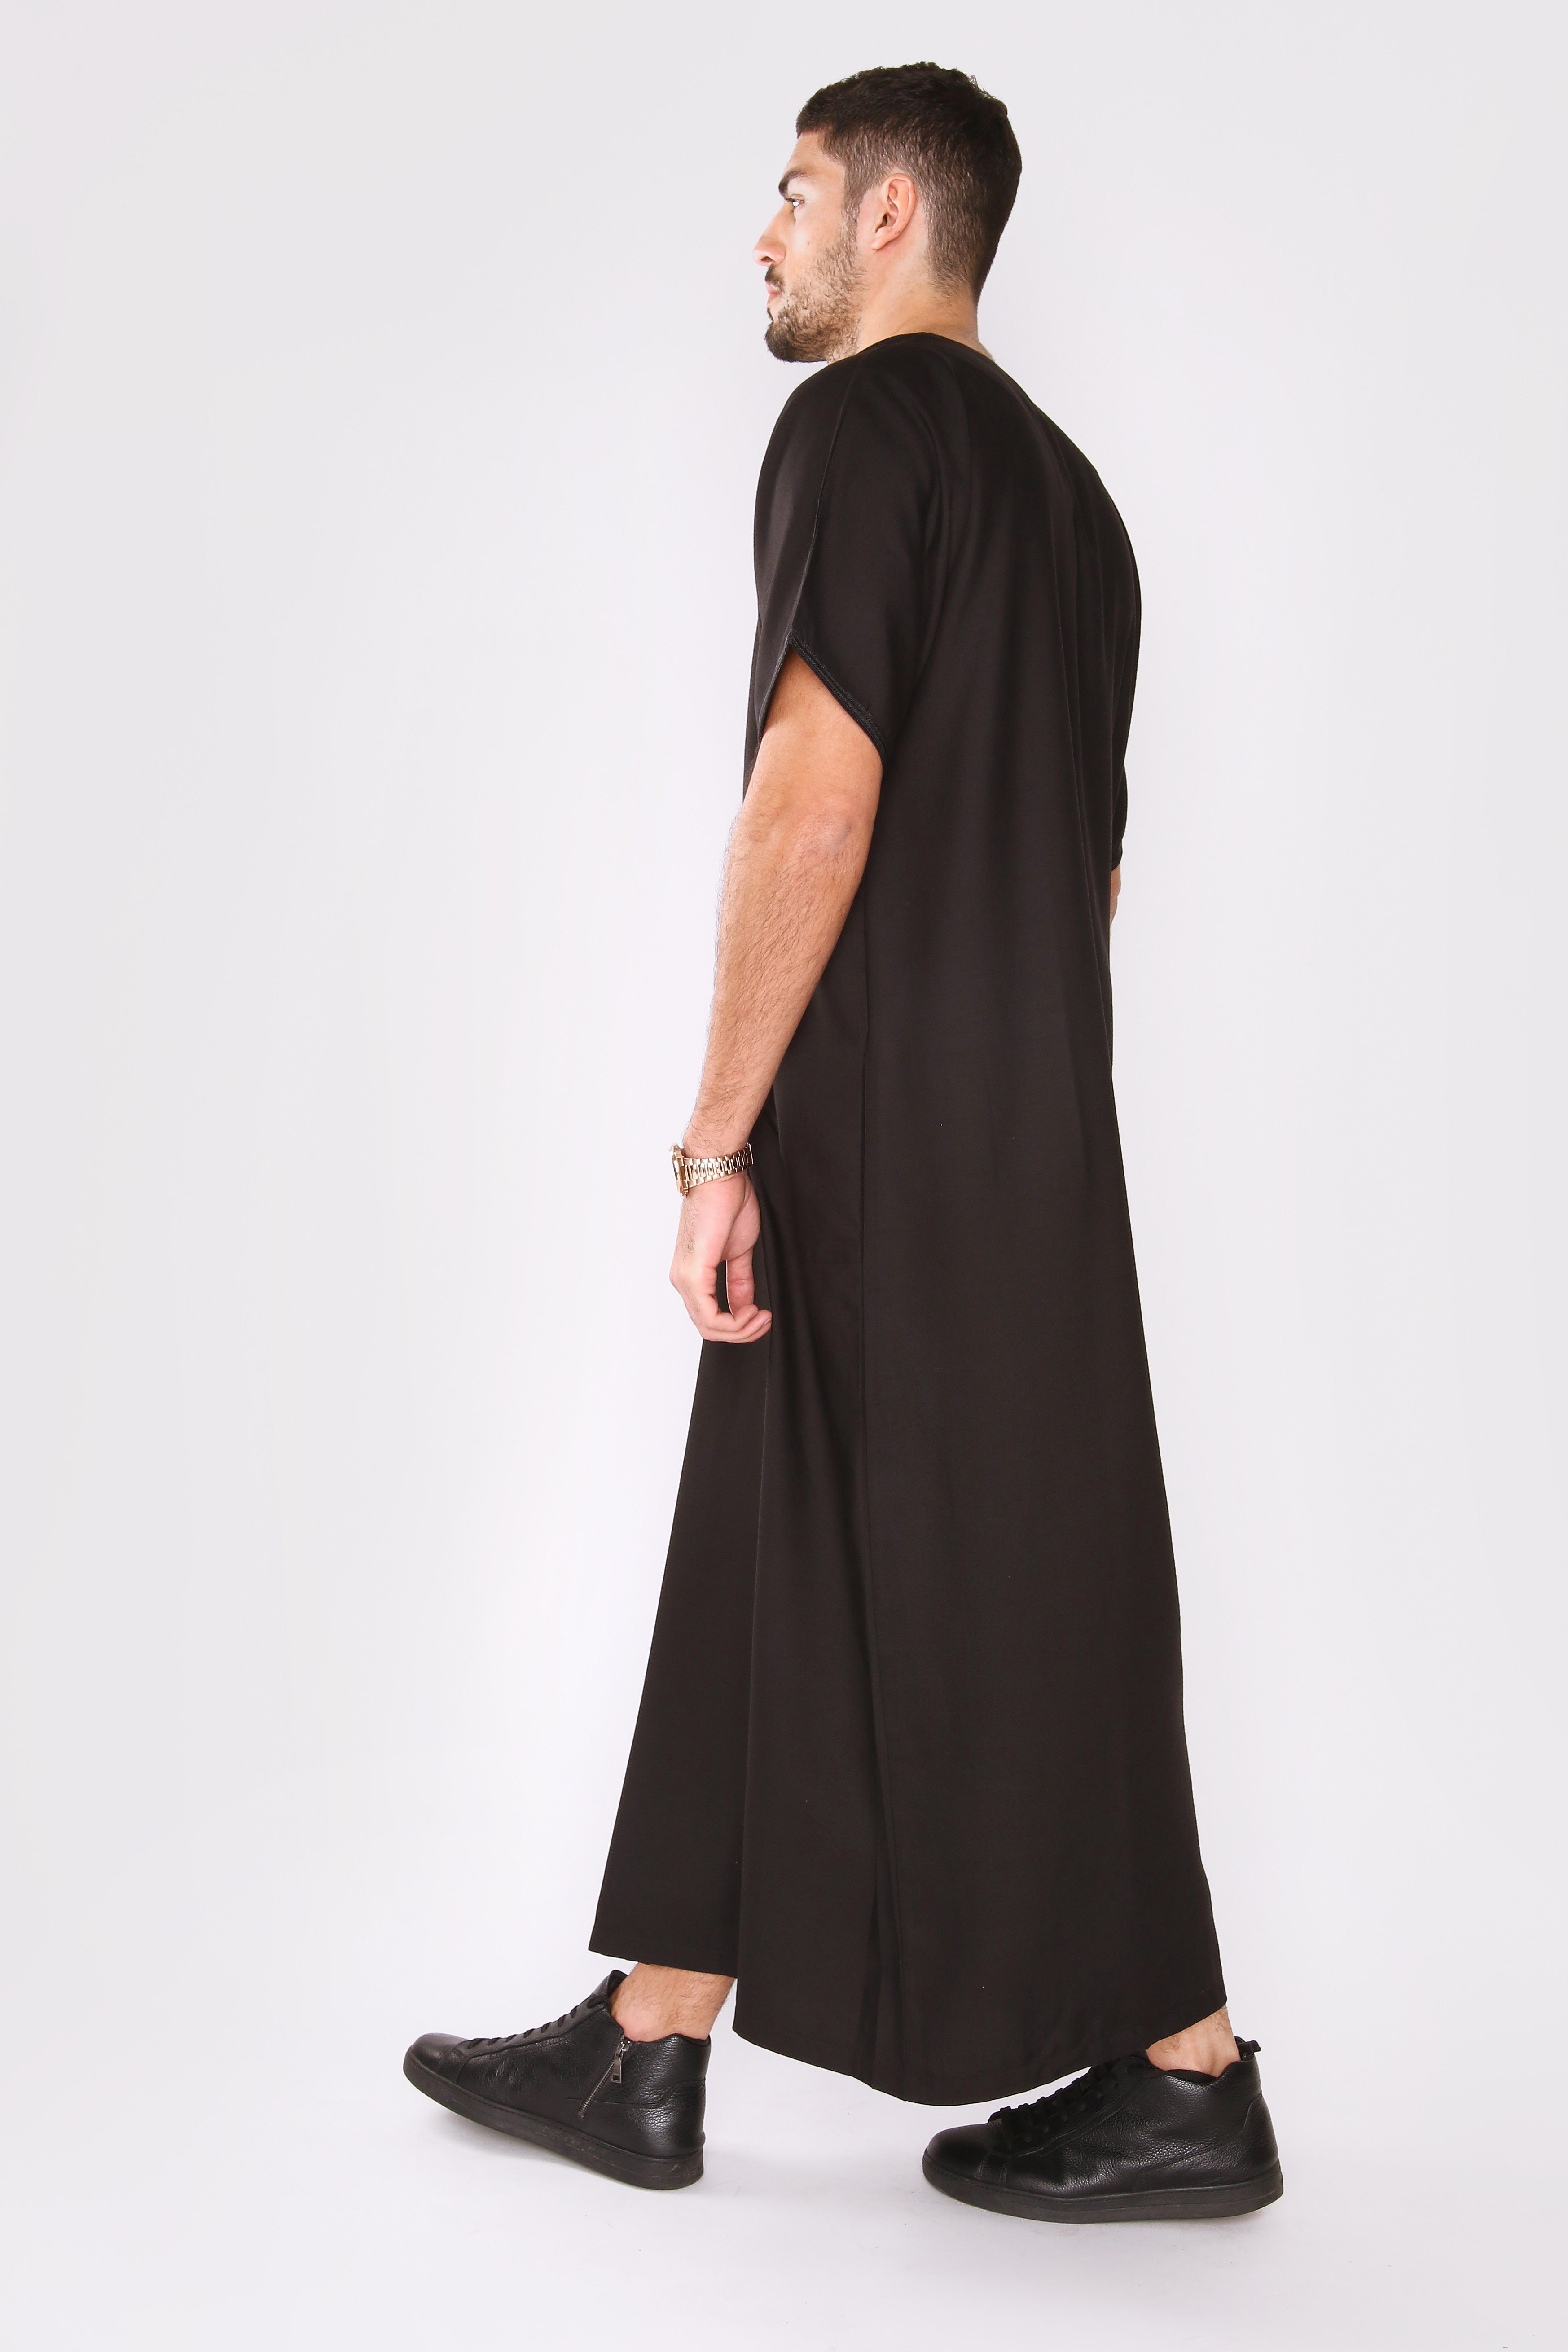 Gandoura Badr Embroidered Short Sleeve Men's Long Robe Thobe in Black